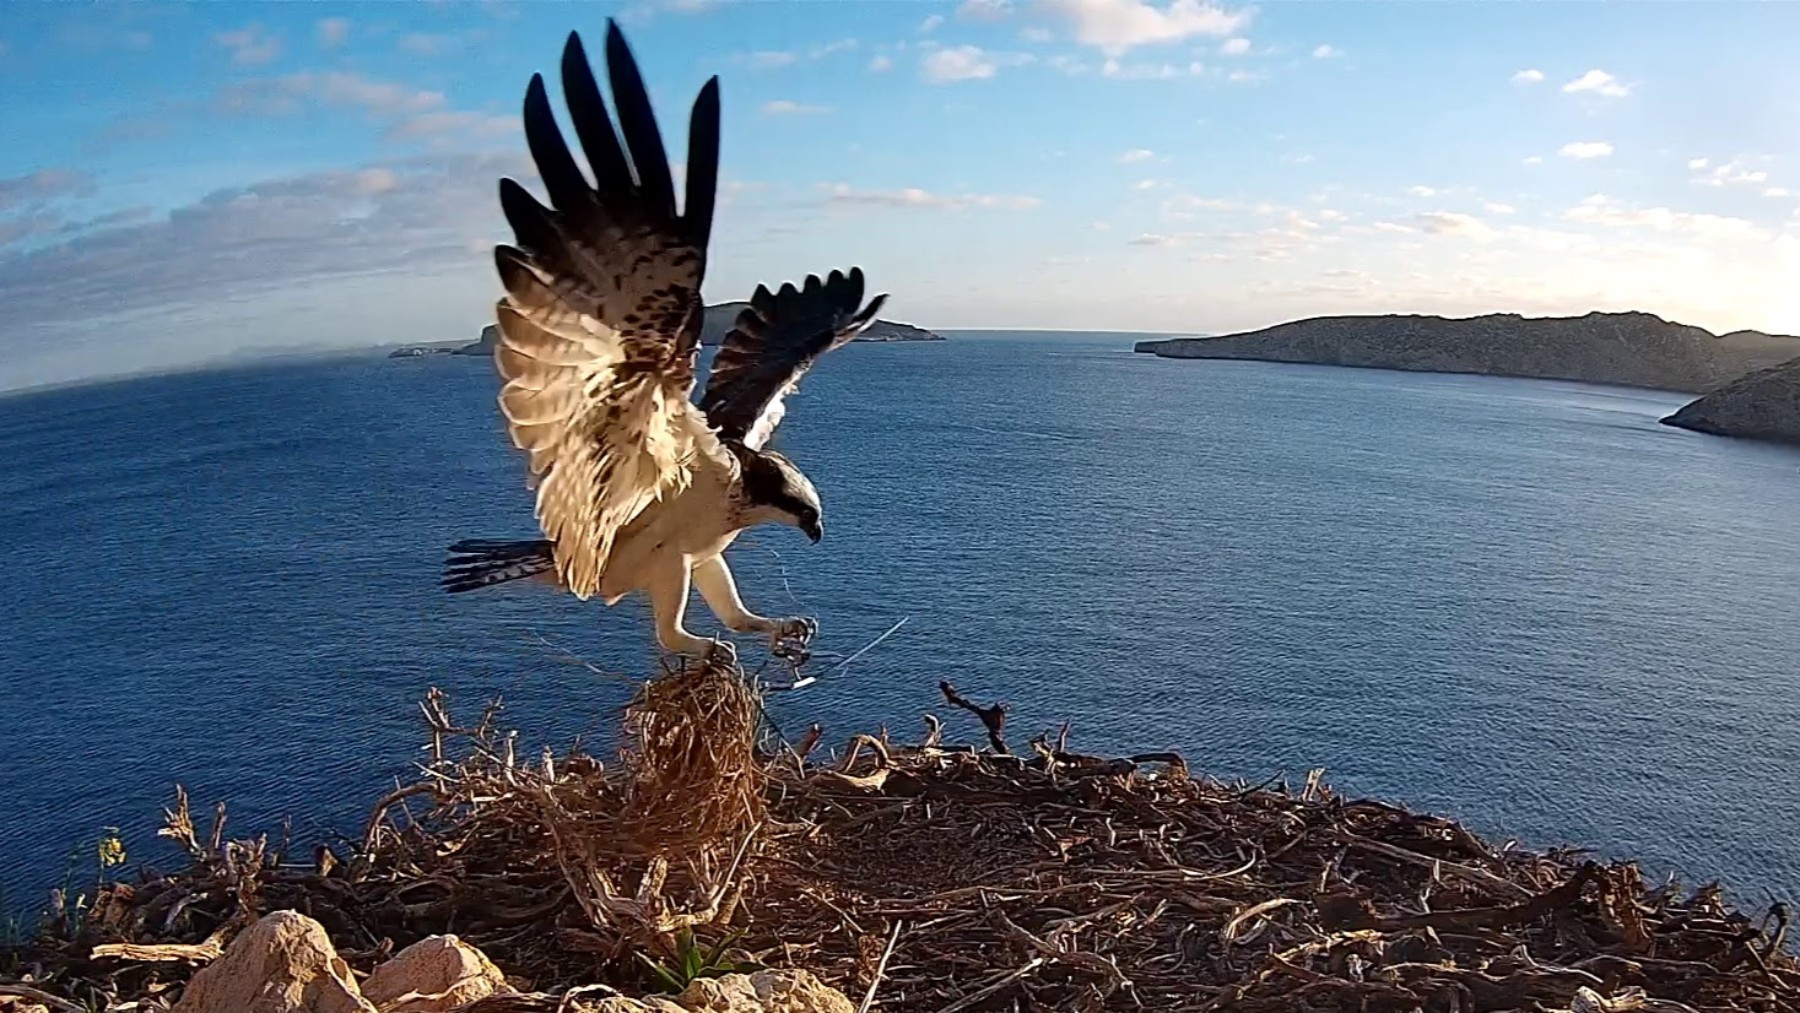 SEO/BirdLife ha colocado una cámara para ver en directo el día a día del águila pescadora